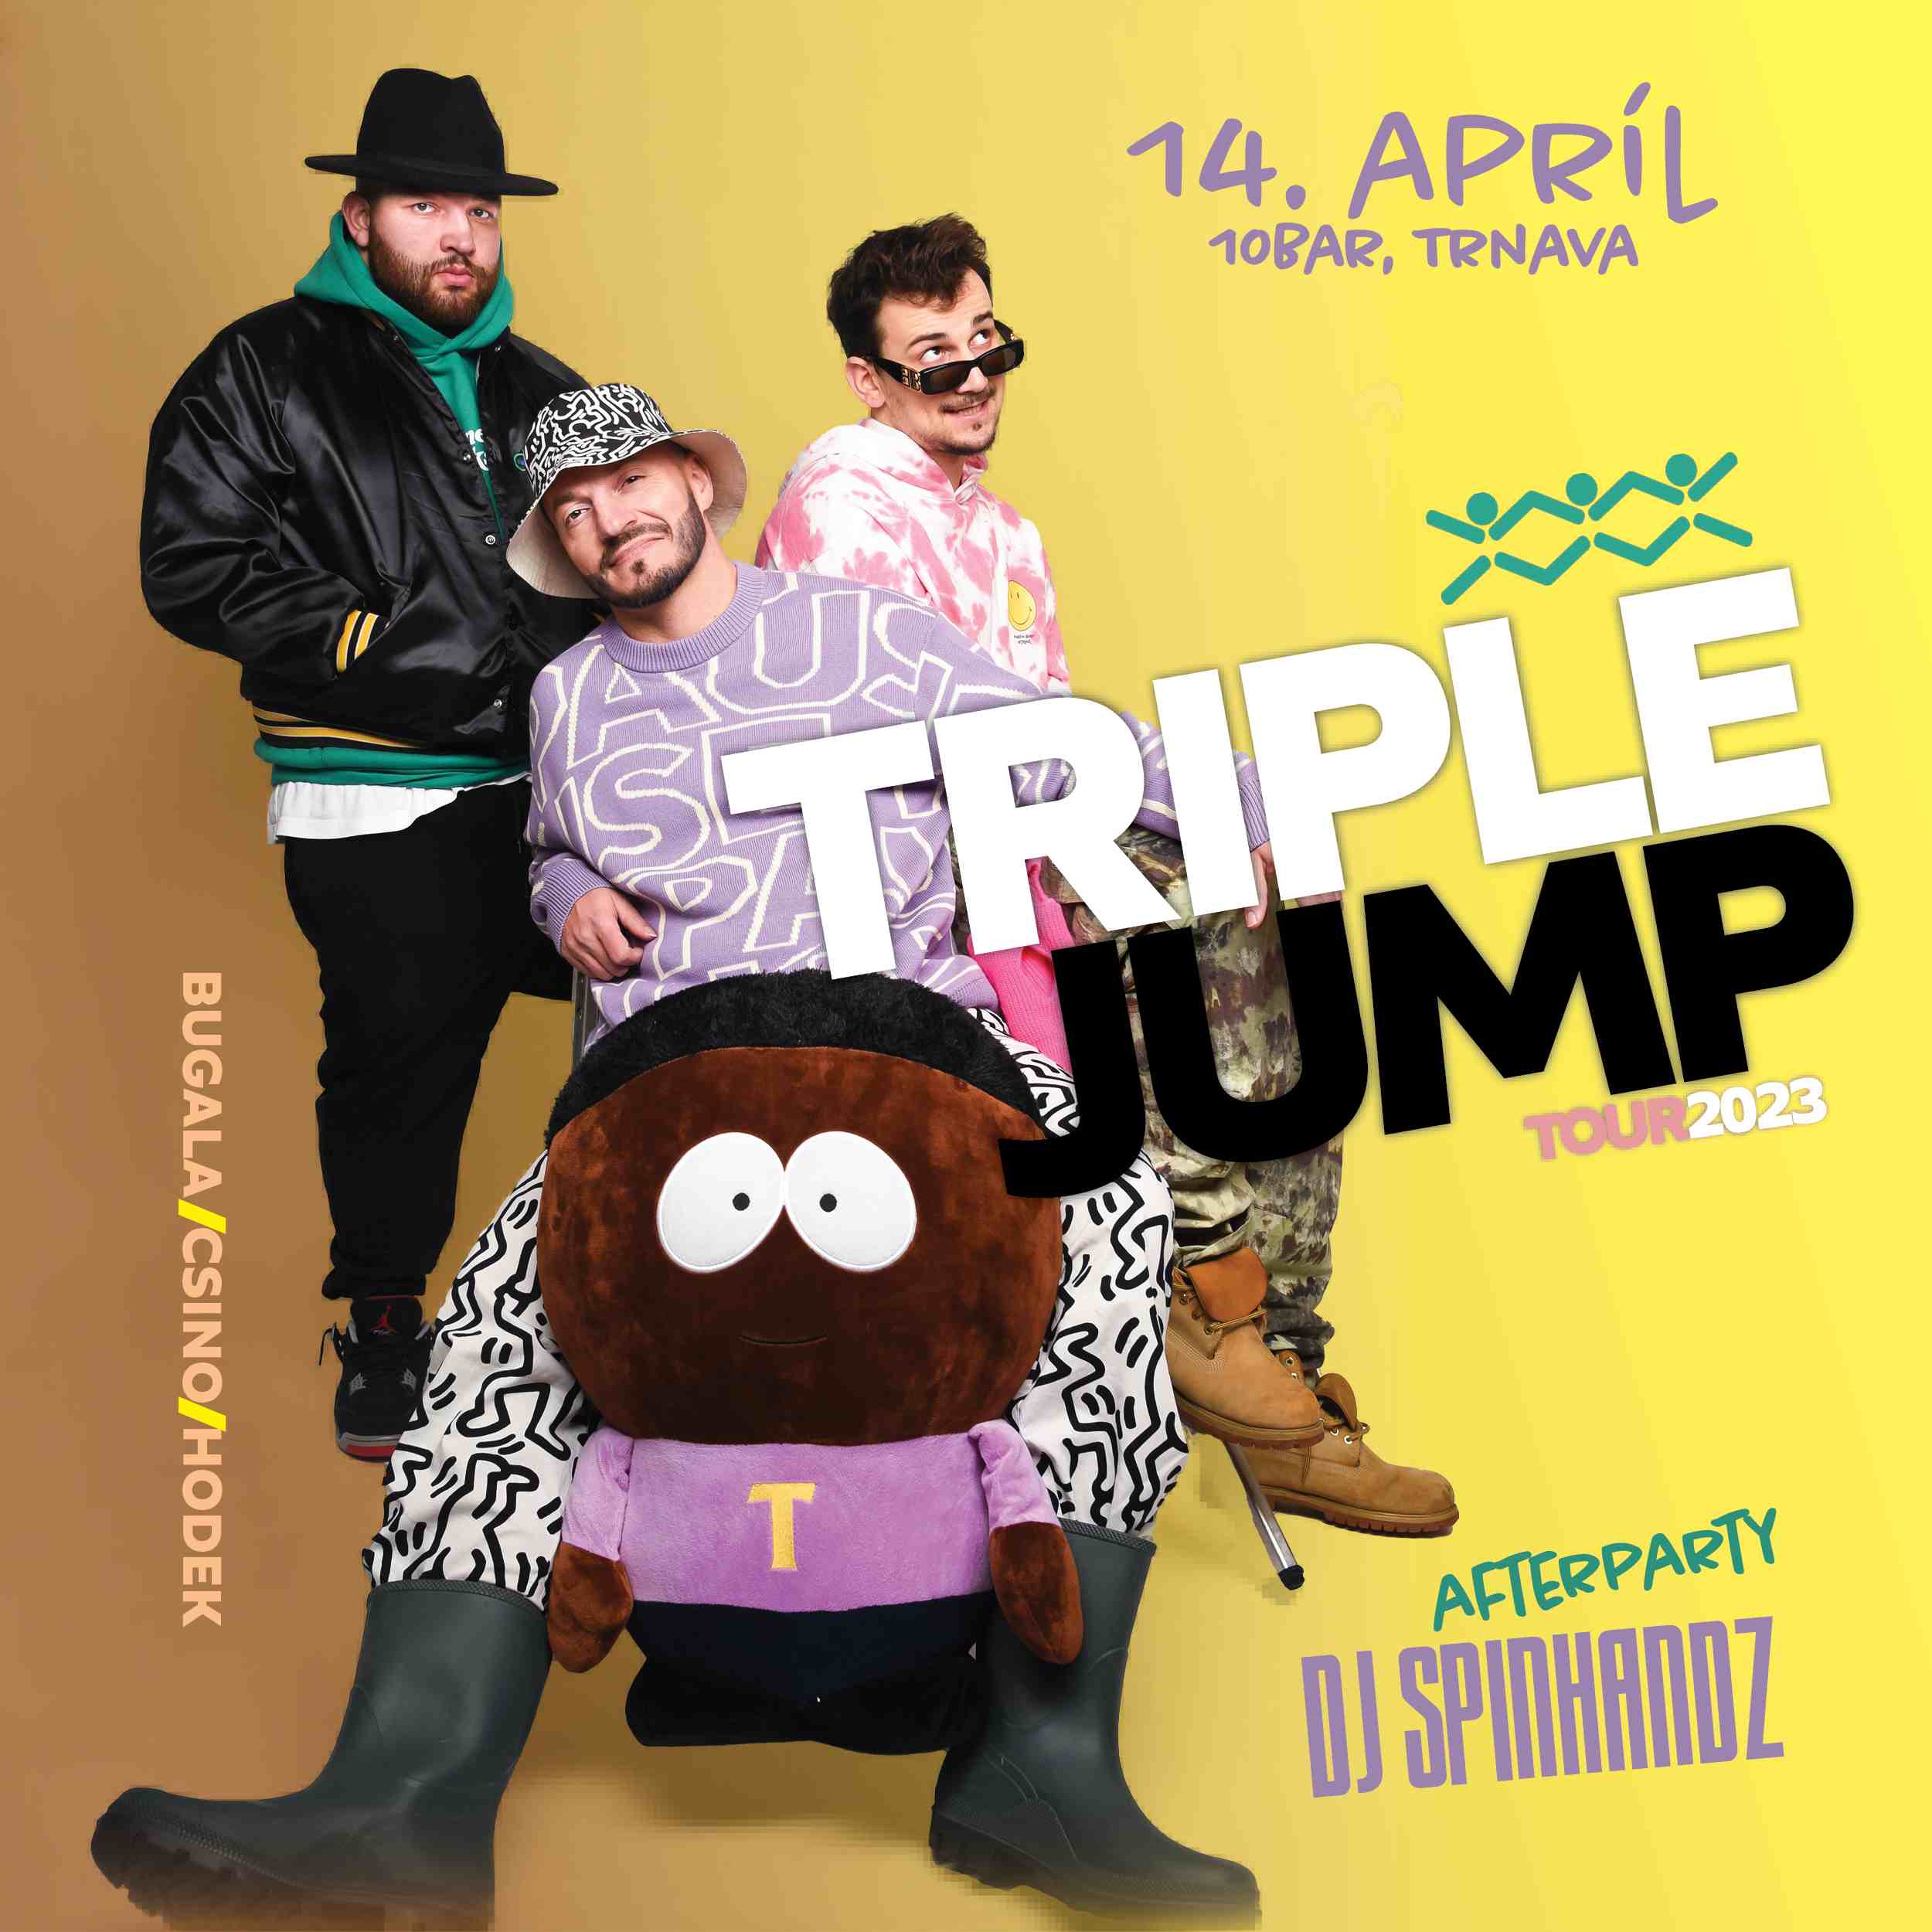 picture TripleJump + afterparty DJ Spinhandz